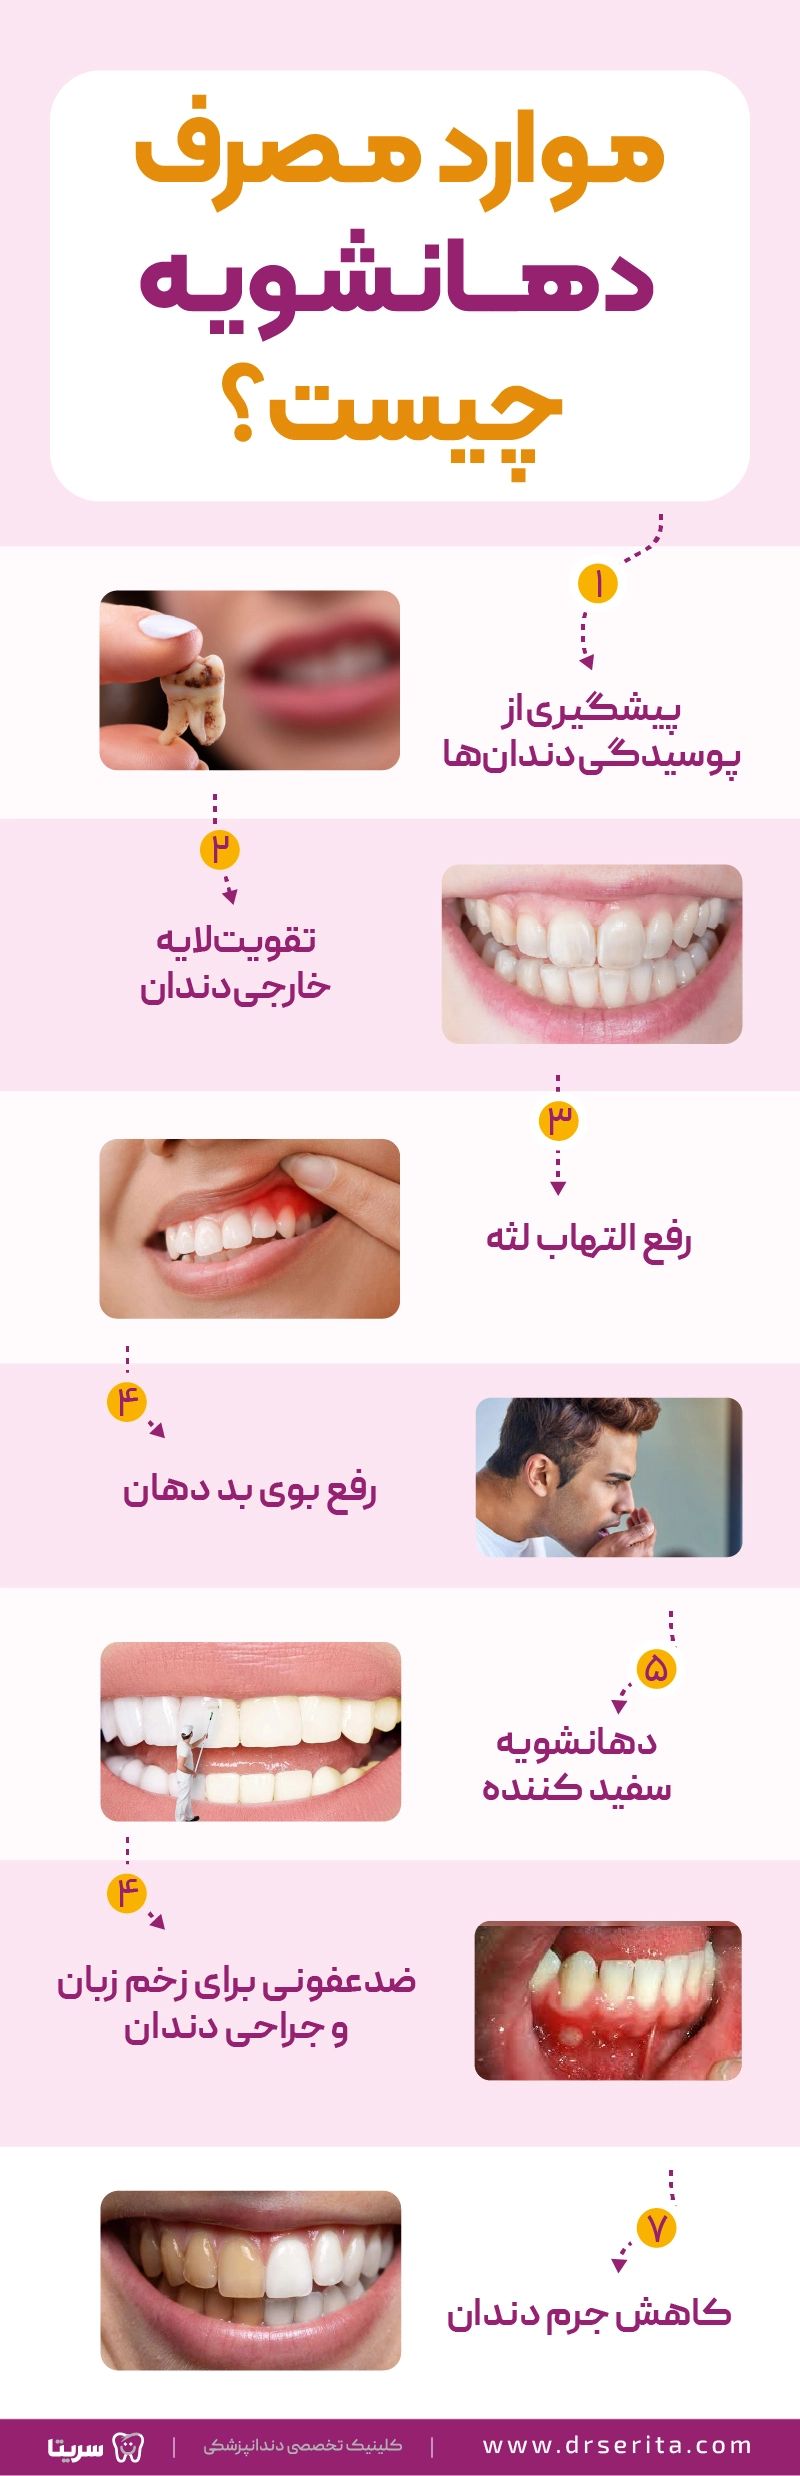 اینفوگرافیک موارد مصرف دهانشویه شامل 7 مورد